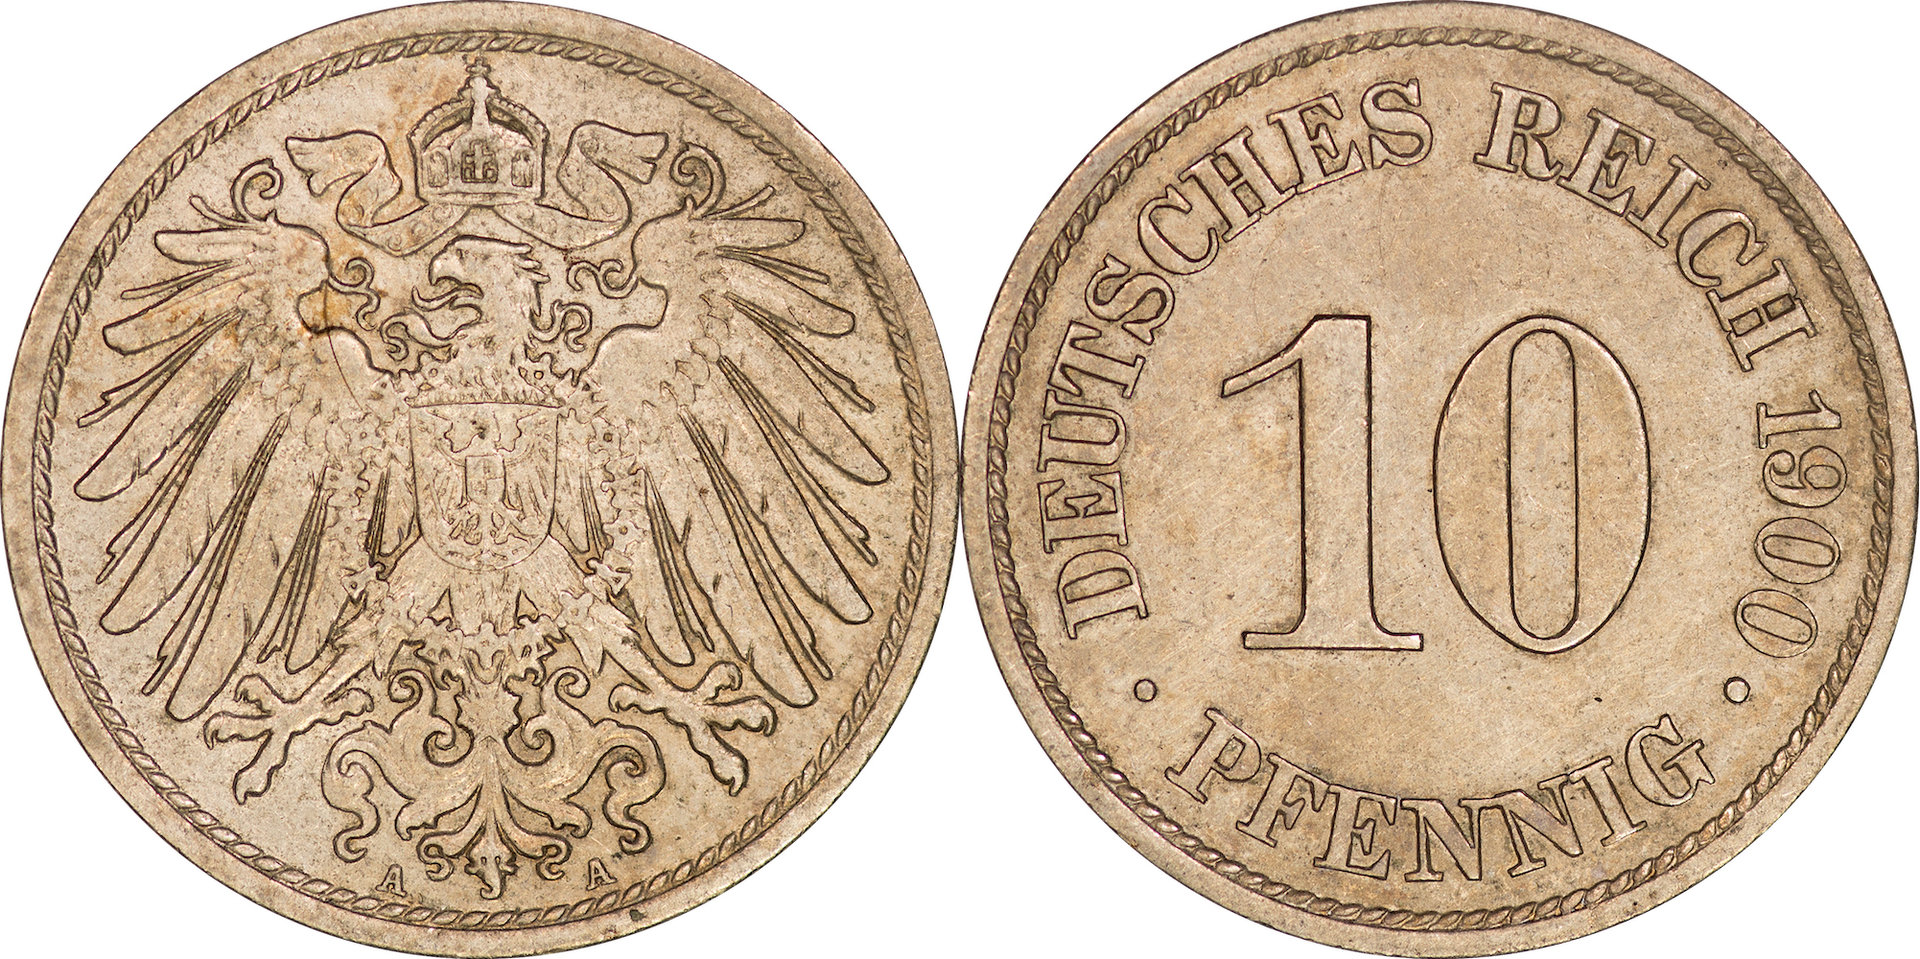 Germany (Empire) - 1900 A 10 Pfennig.jpg